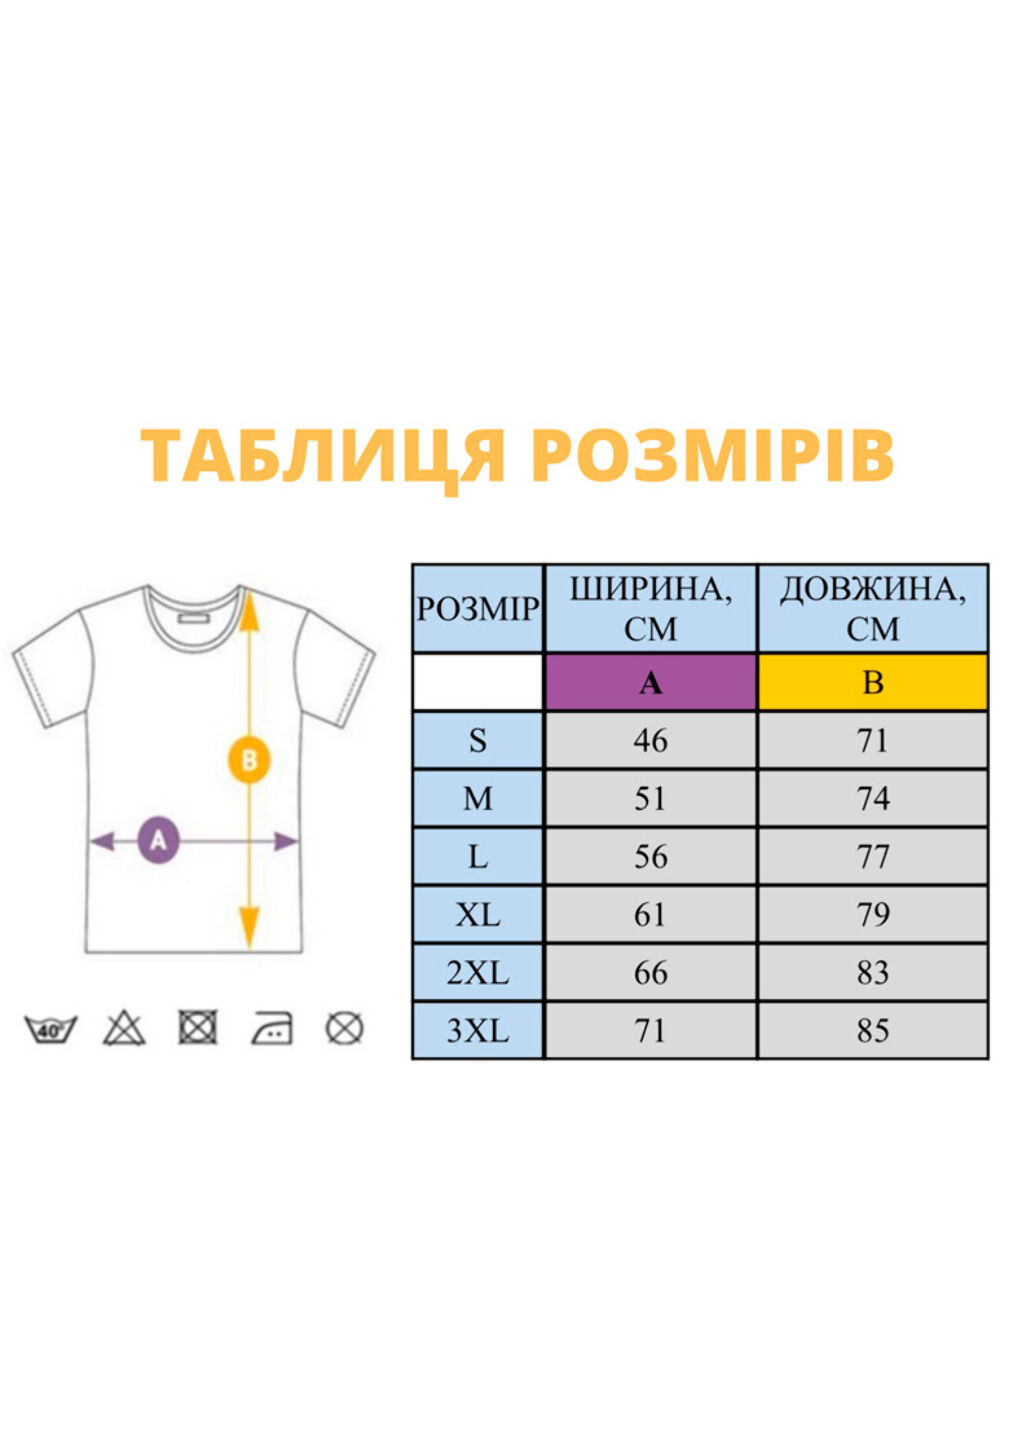 Серая футболка серая с вышивкой украина мужская серый 2xl No Brand